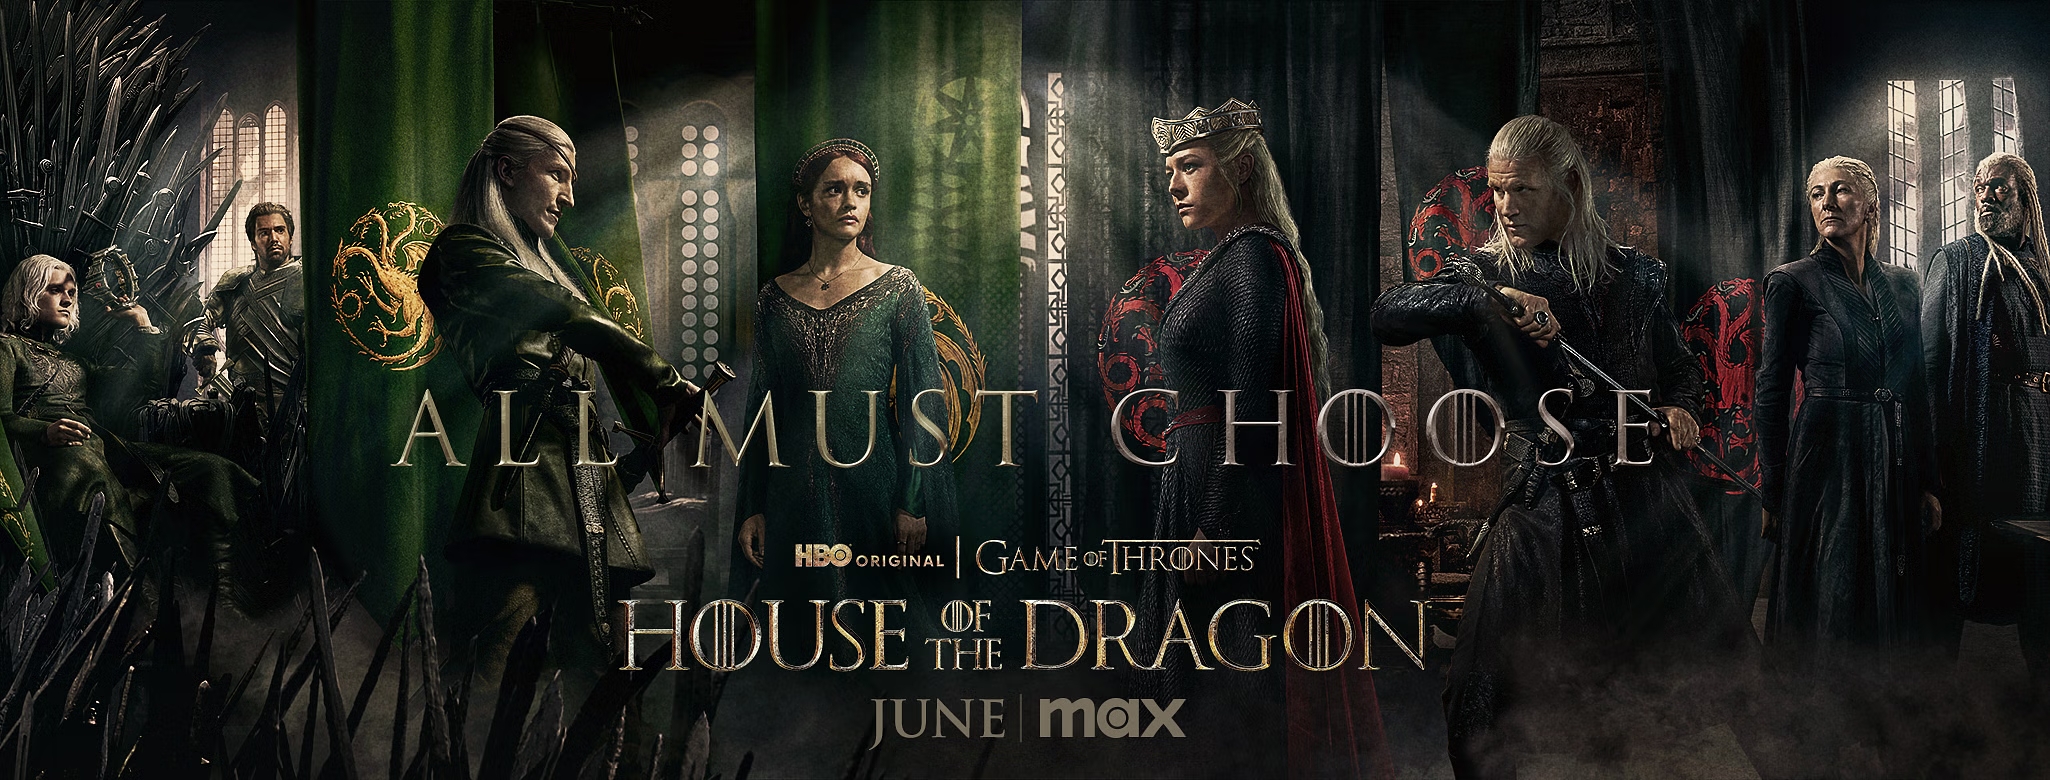 HBO опубликовали официальный трейлер второго сезона «Дома Дракона»